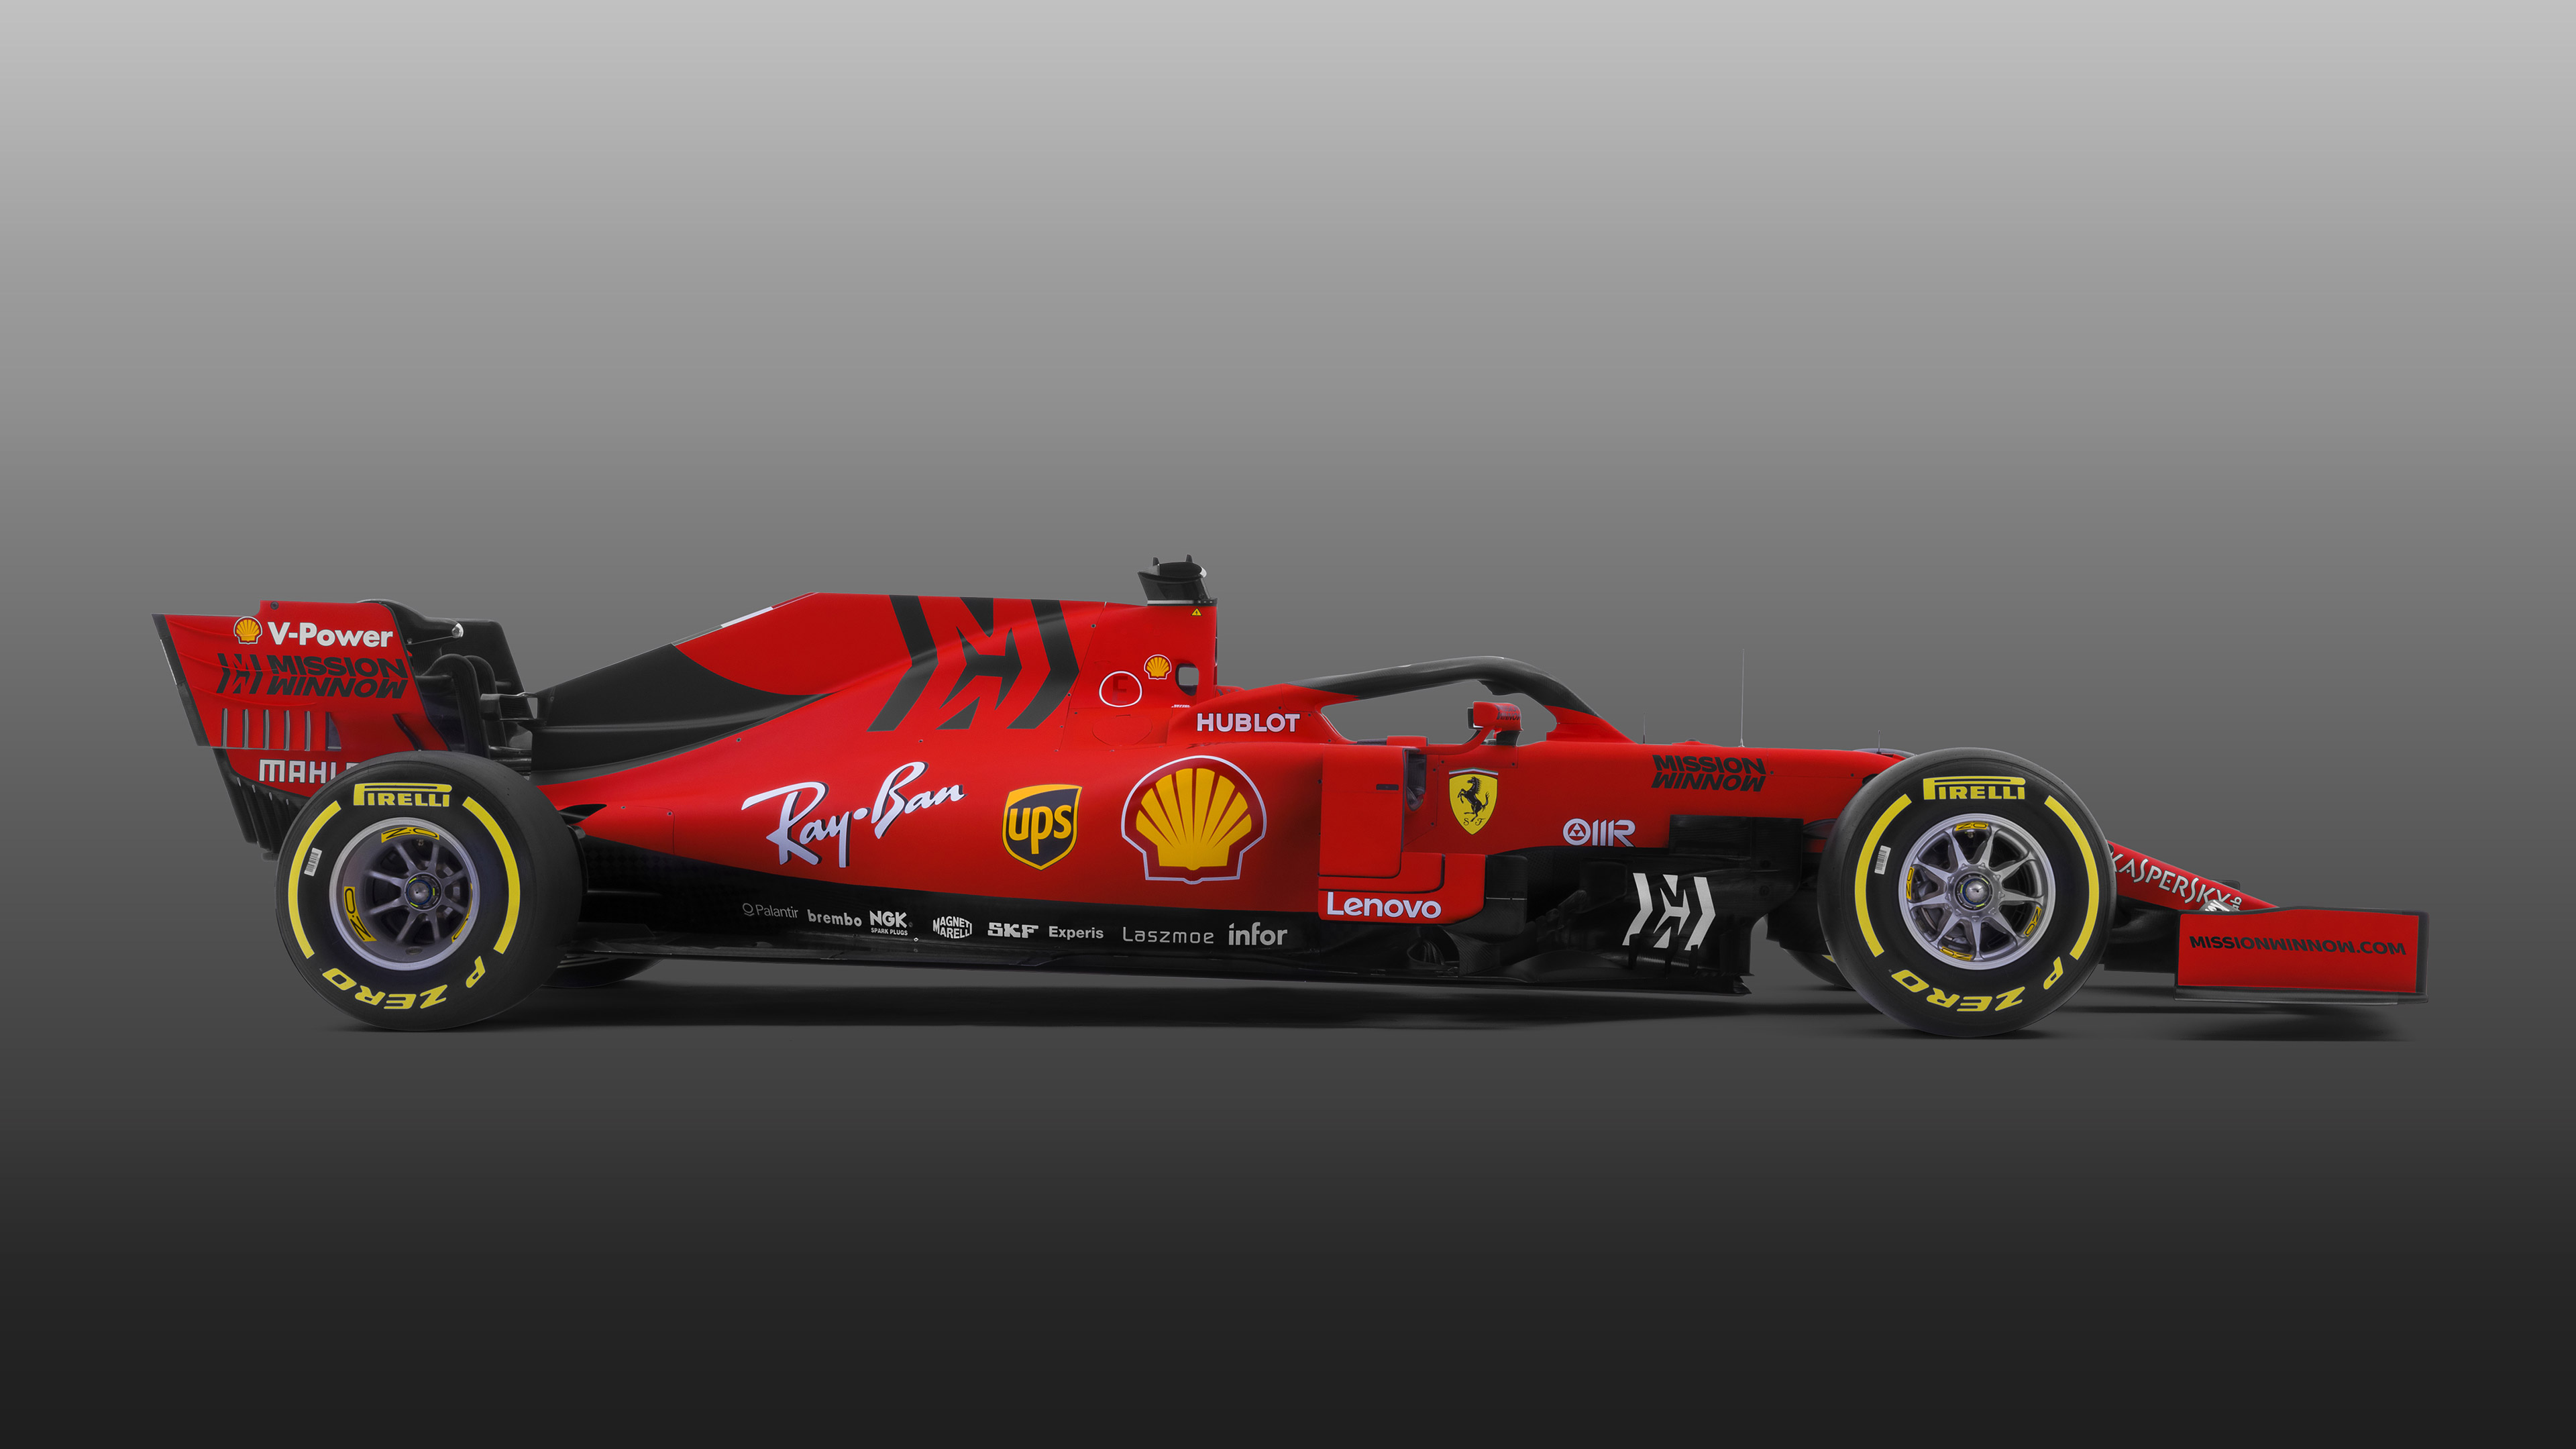 Ferrari F1 2019 - PS4Wallpapers.com